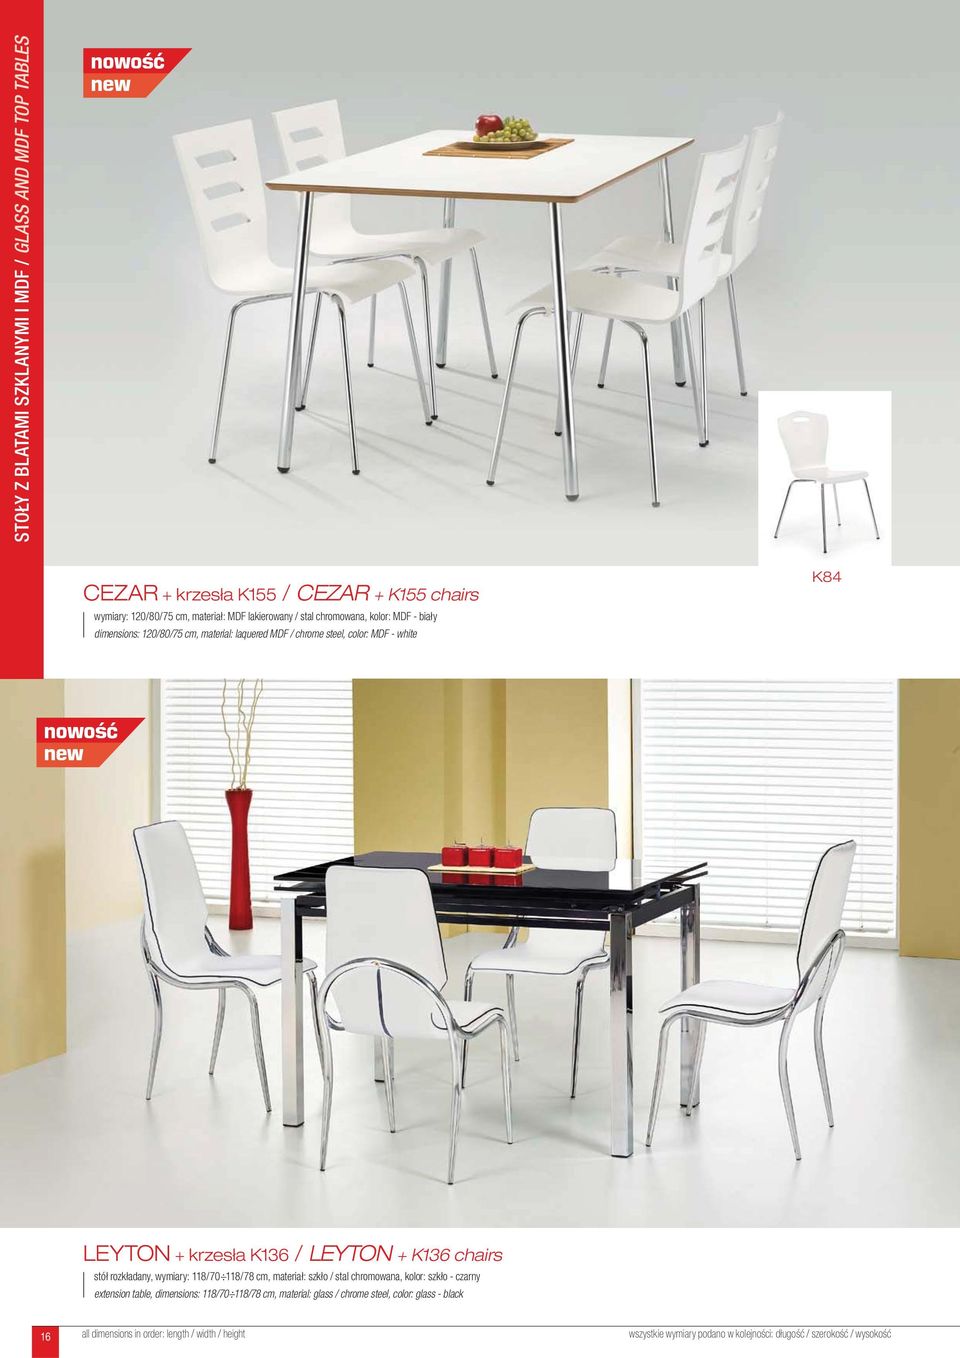 LEYTON + krzesła K136 / LEYTON + K136 chairs stół rozkładany, wymiary: 118/70 118/78 cm, materiał: szkło / stal chromowana, kolor: szkło -